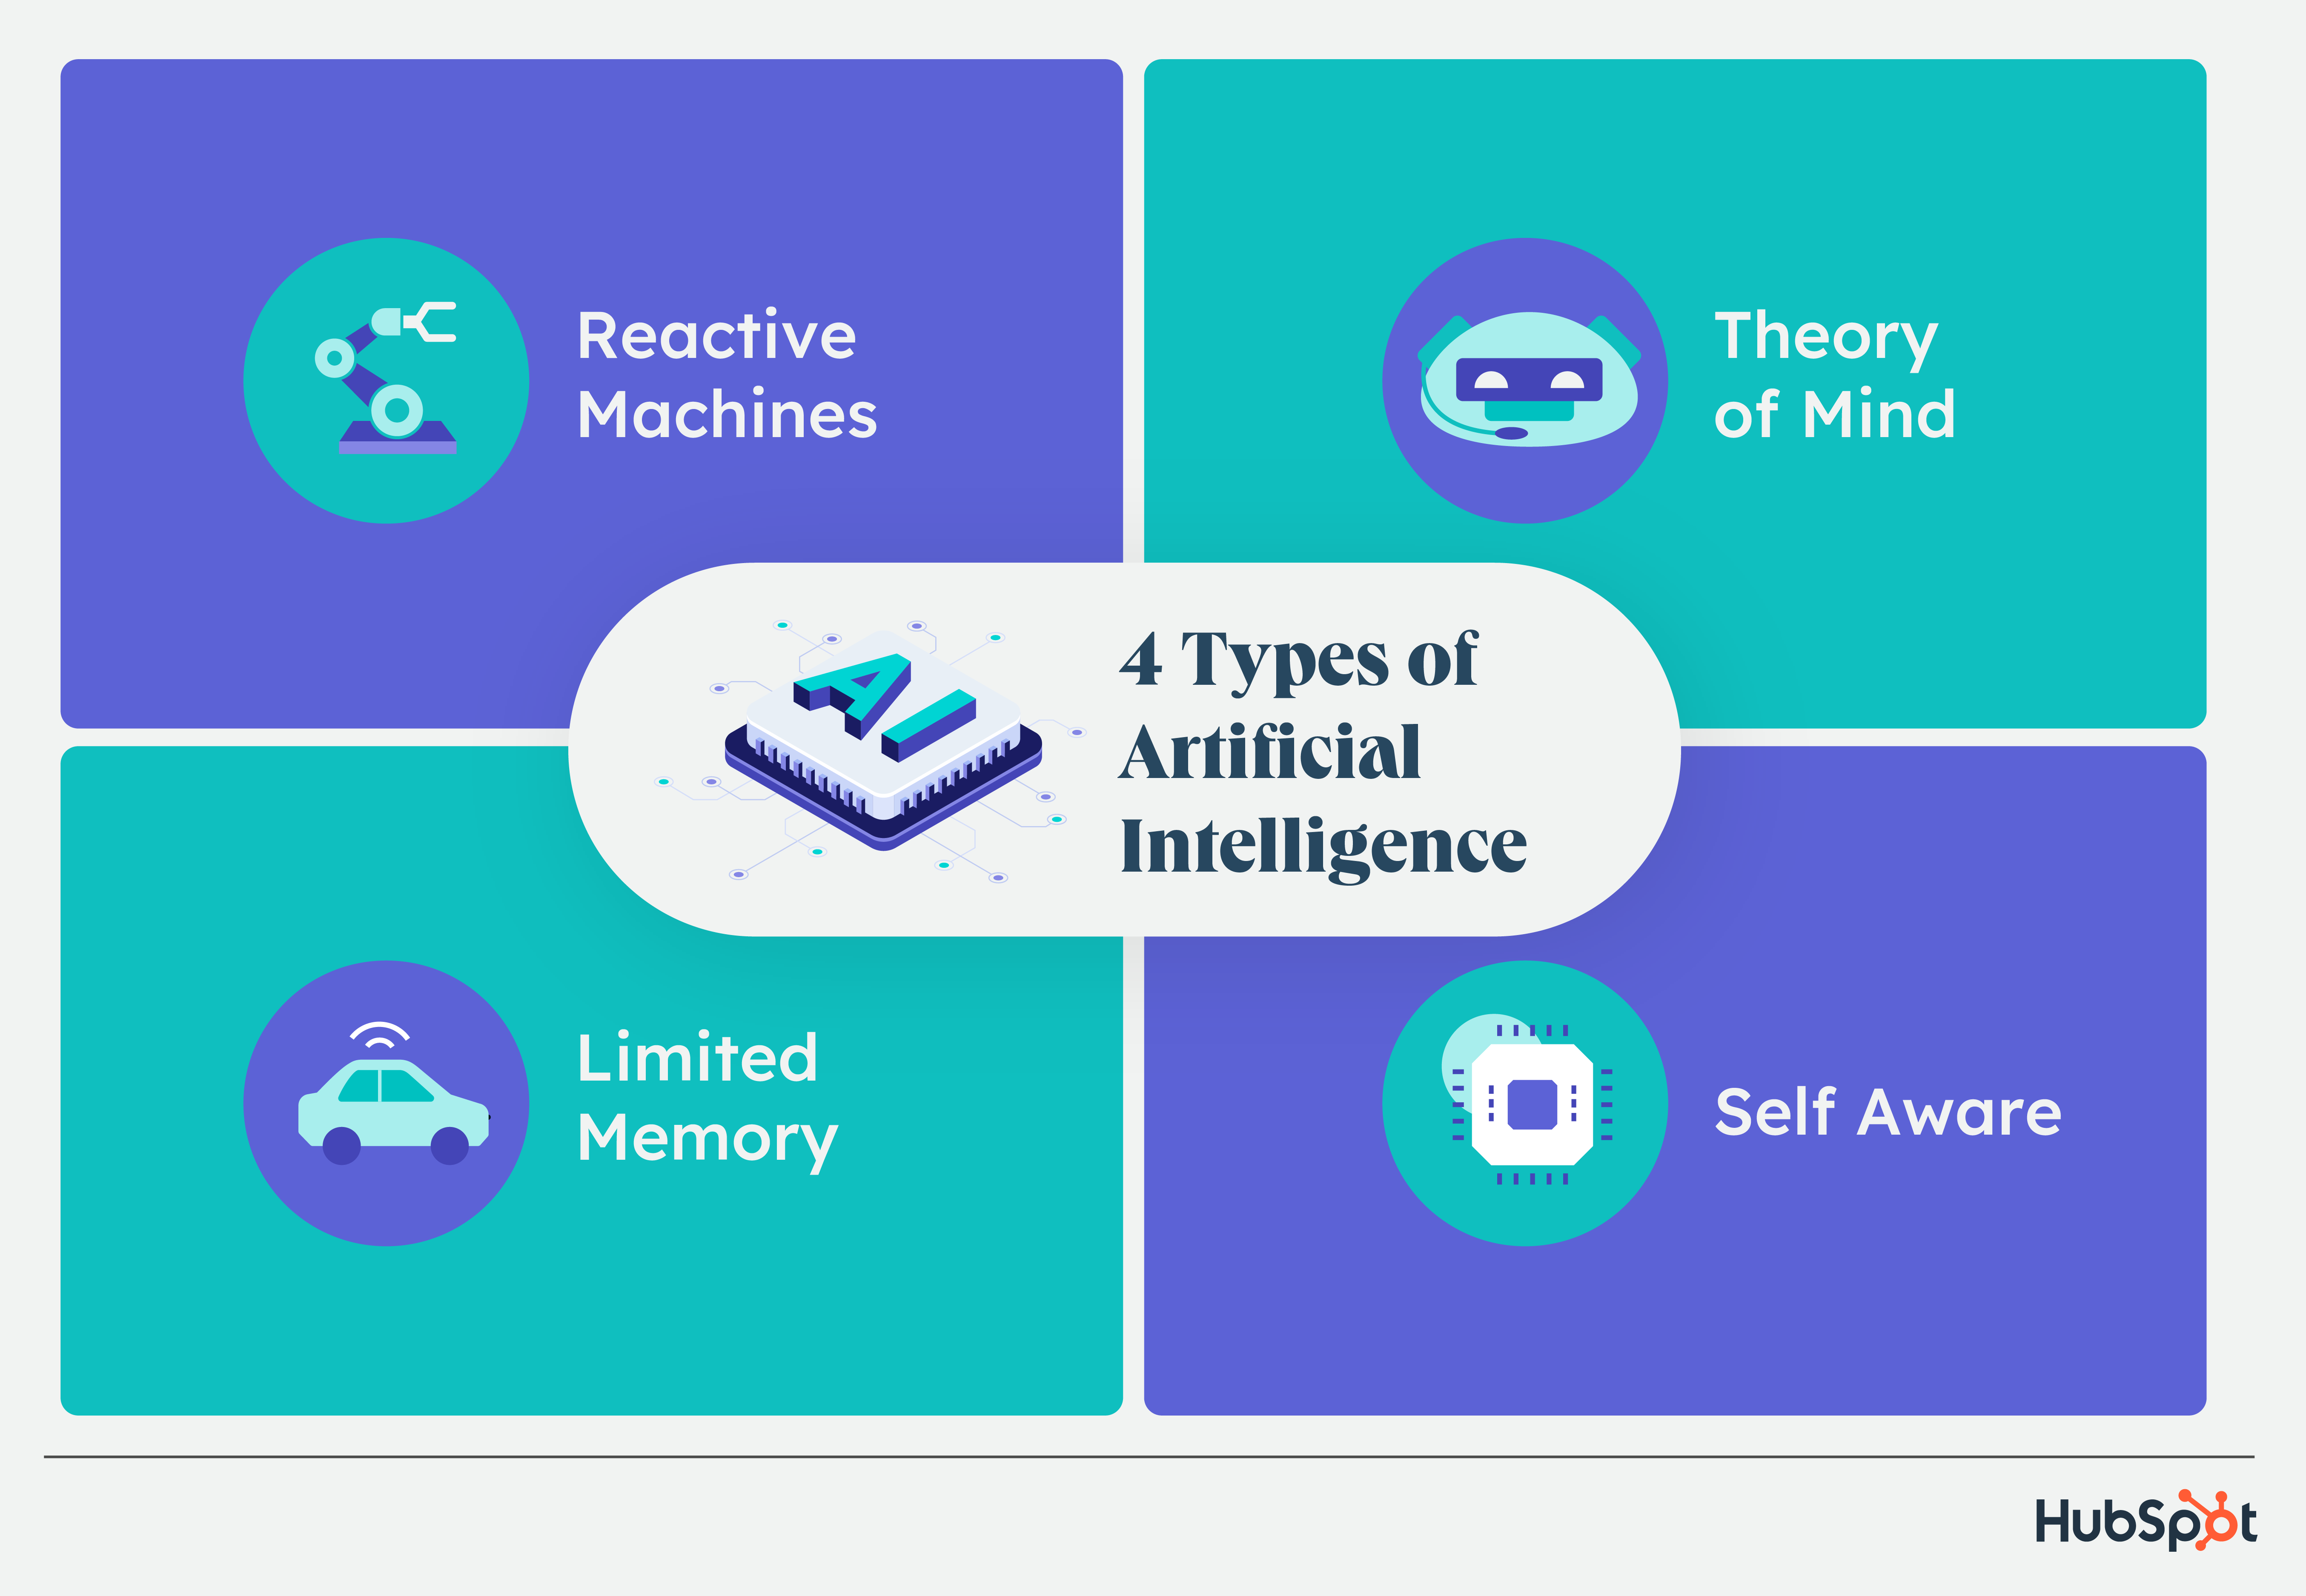 4 نوع هوش مصنوعی: ماشین های واکنشی، حافظه محدود، تئوری ذهن و خودآگاه